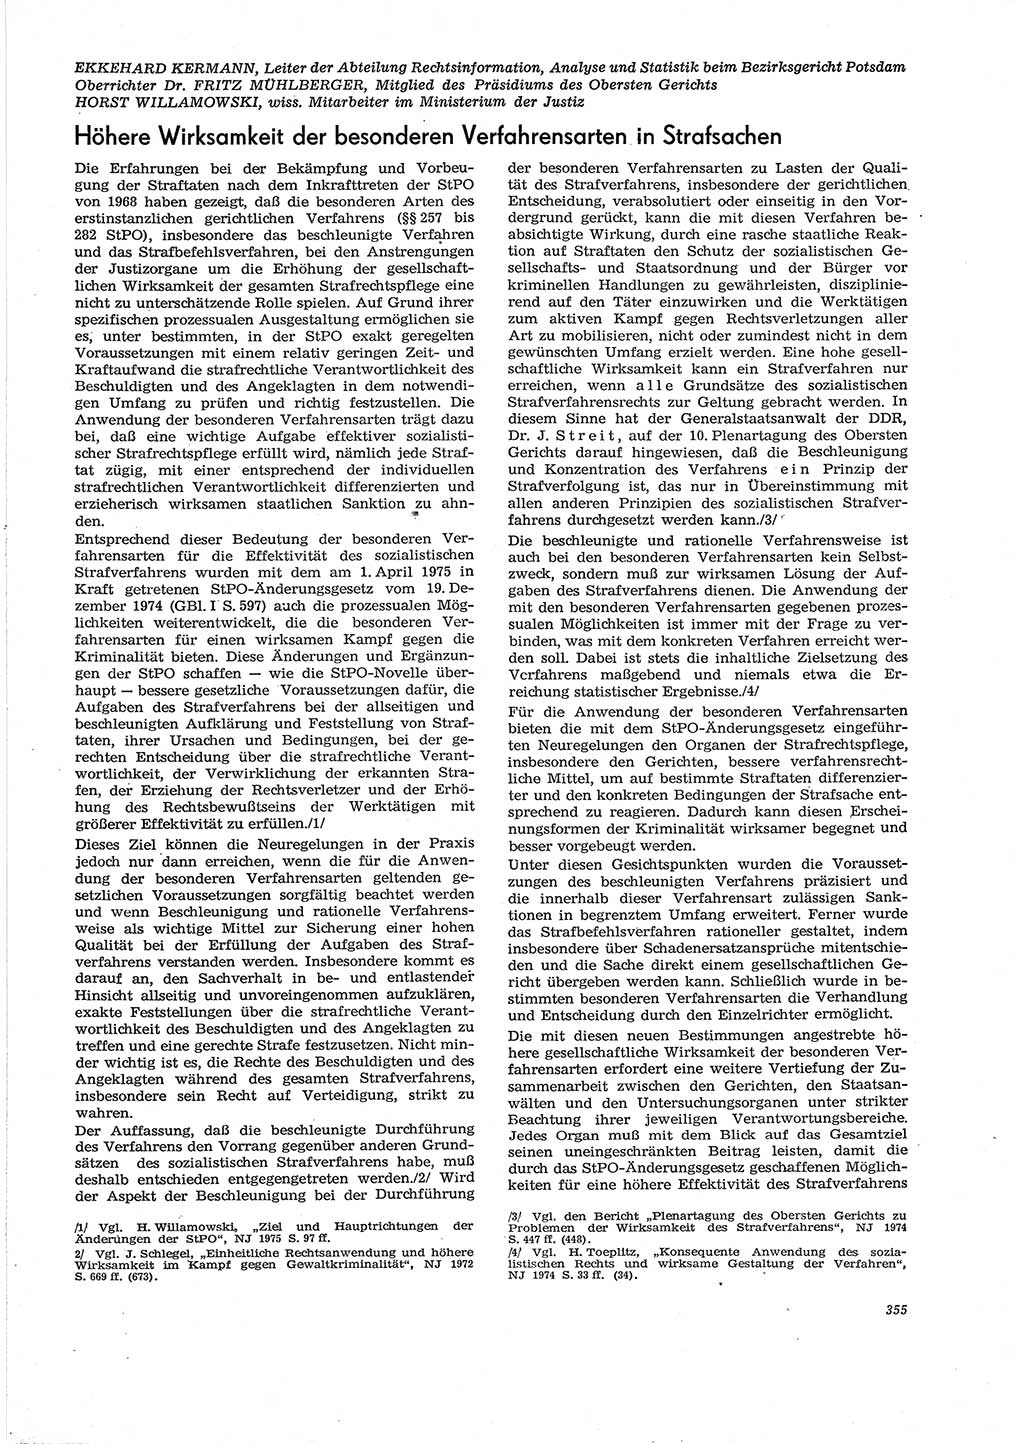 Neue Justiz (NJ), Zeitschrift für Recht und Rechtswissenschaft [Deutsche Demokratische Republik (DDR)], 29. Jahrgang 1975, Seite 355 (NJ DDR 1975, S. 355)